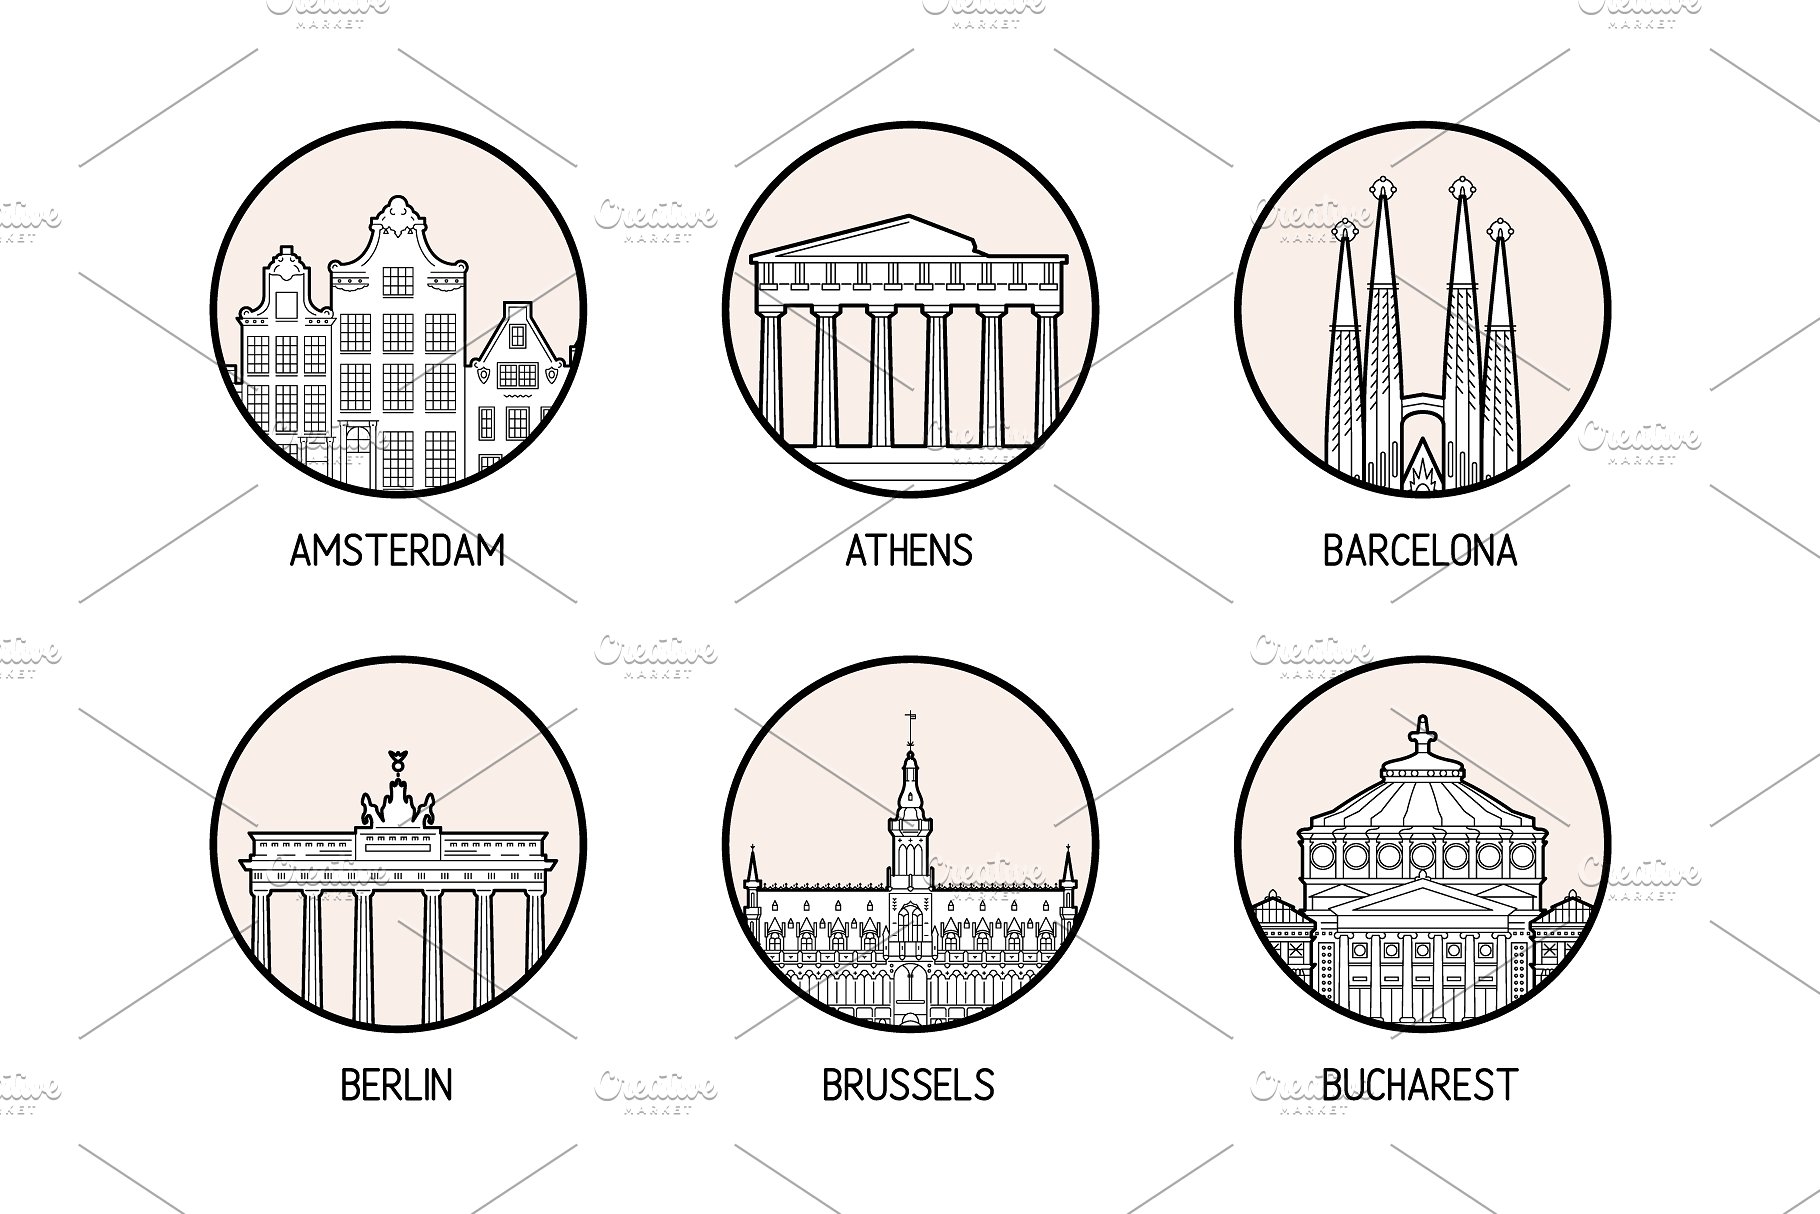 30个欧洲城市的徽章图标集合 Icons of 30 European cities插图2